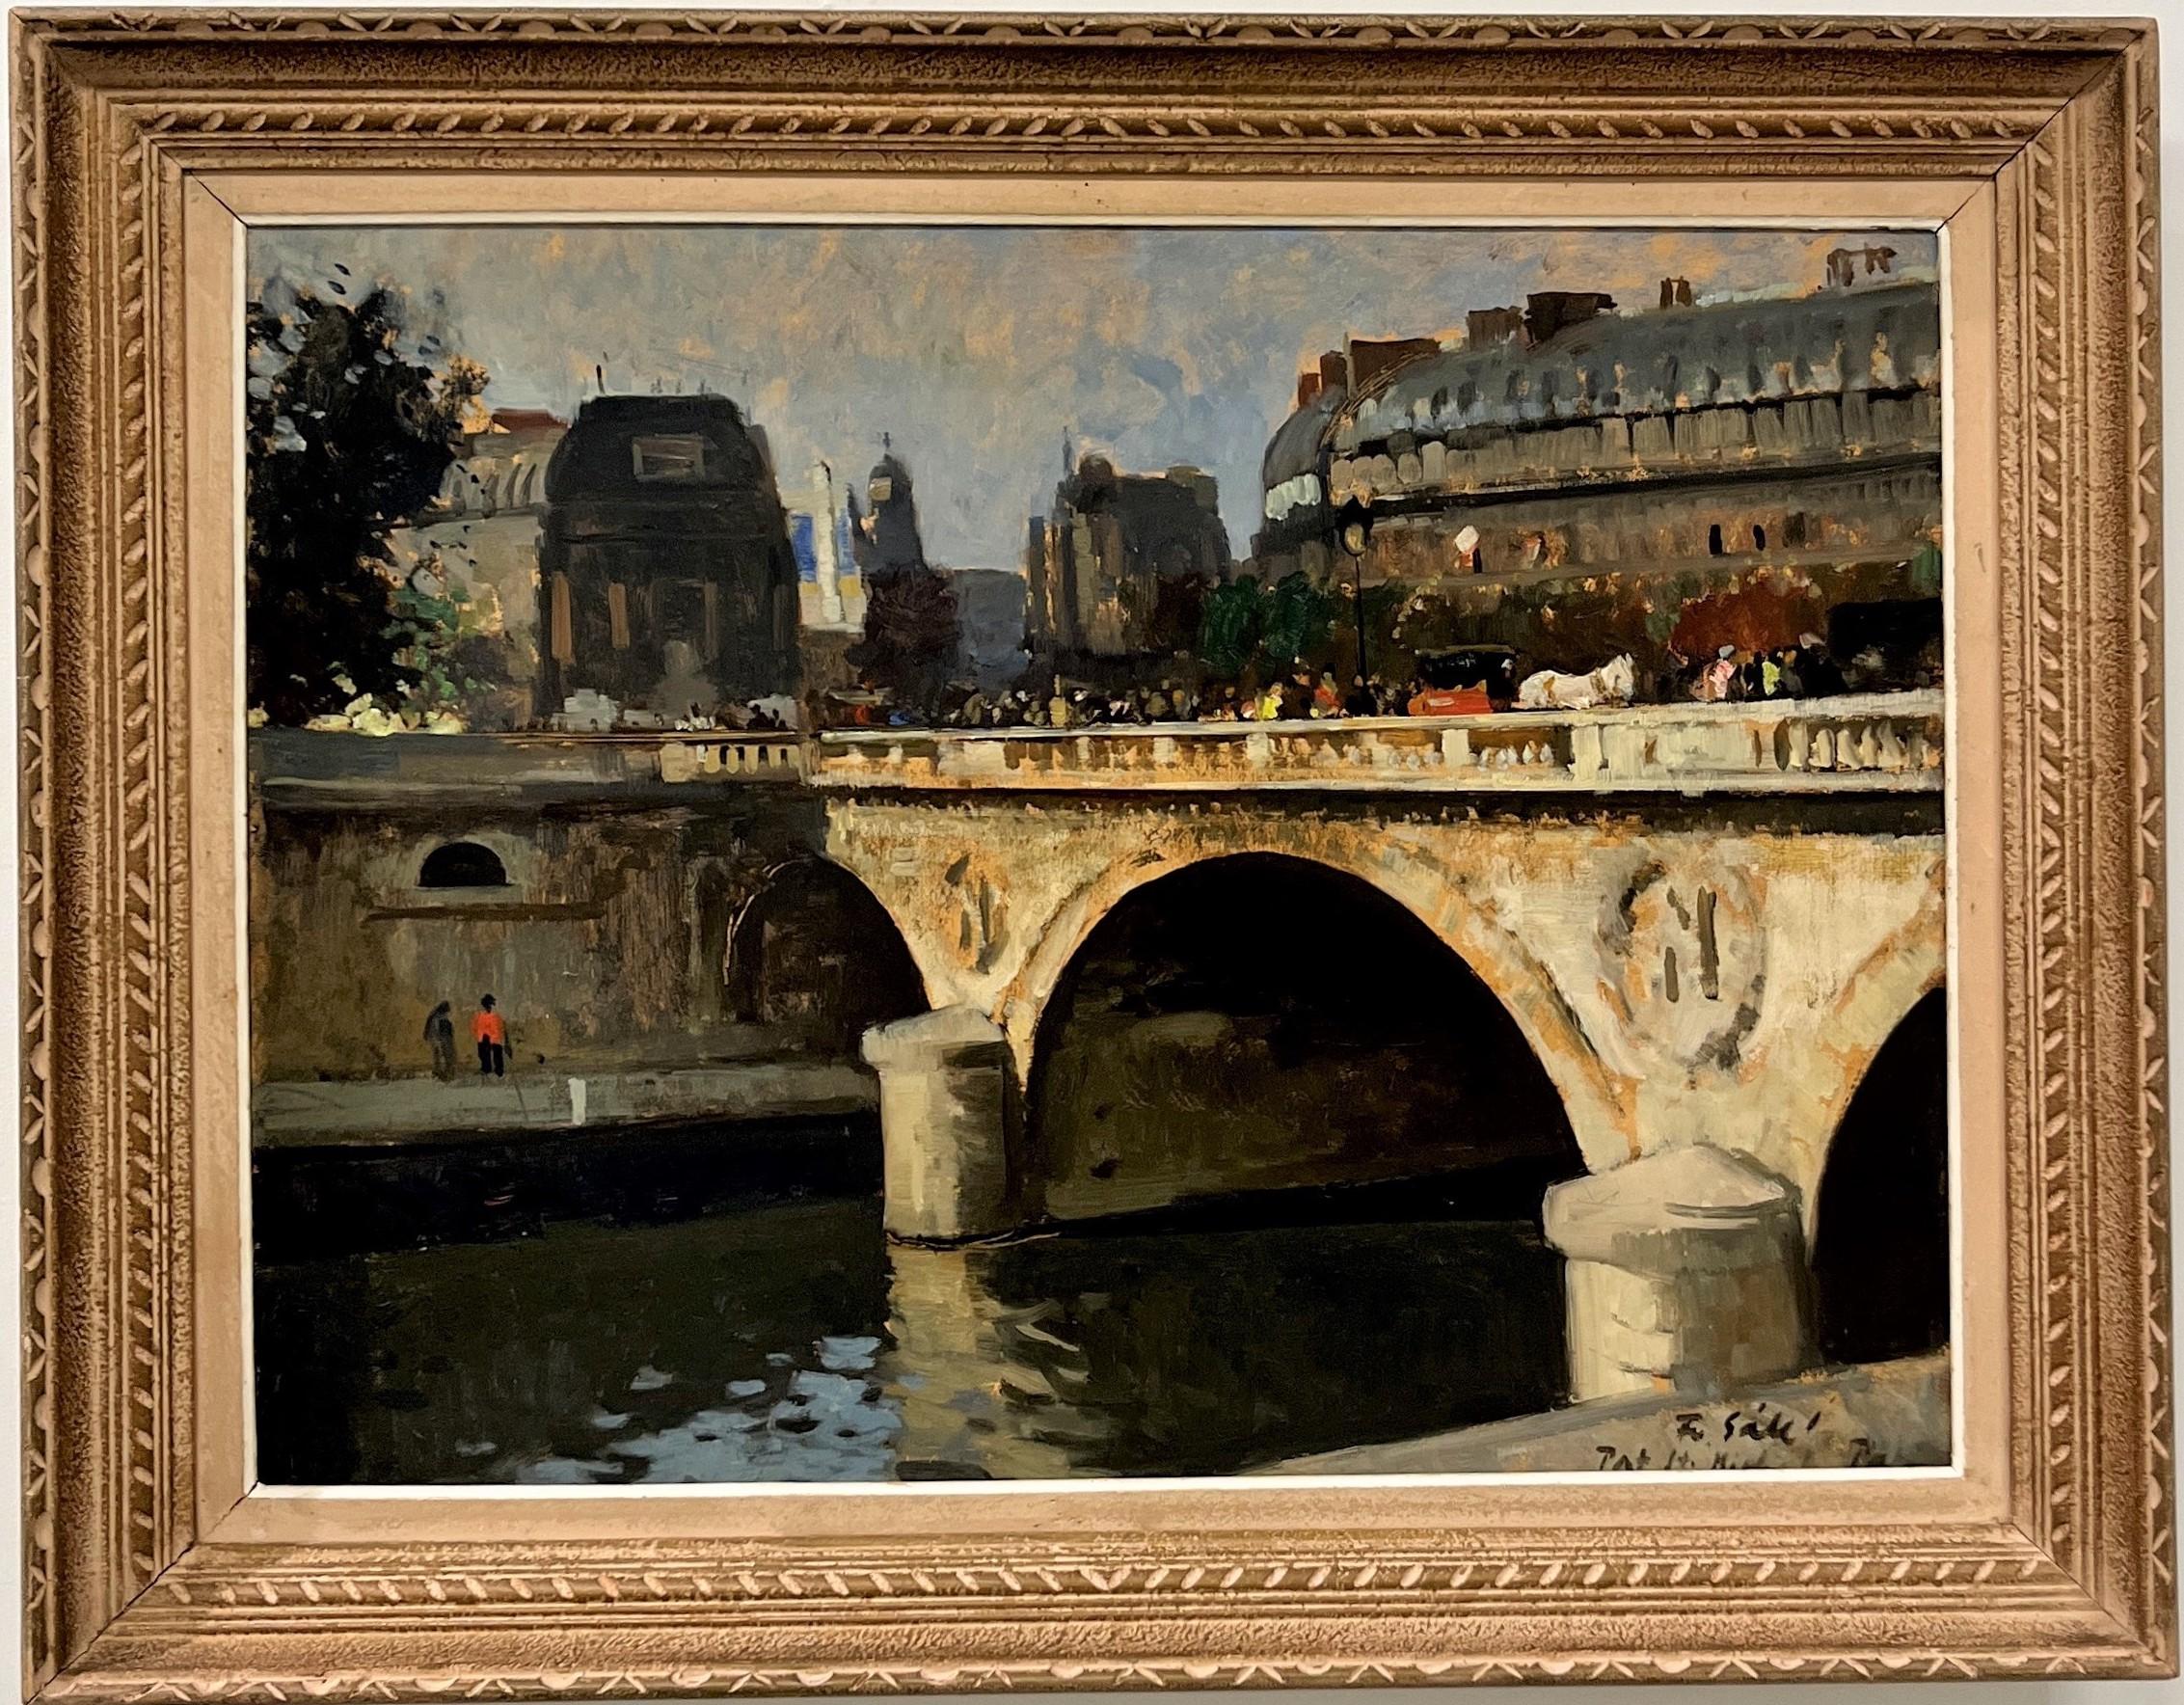 Le Fiacre au Cheval Blanc, Pont St. Michel – Paris - Painting by François Gall